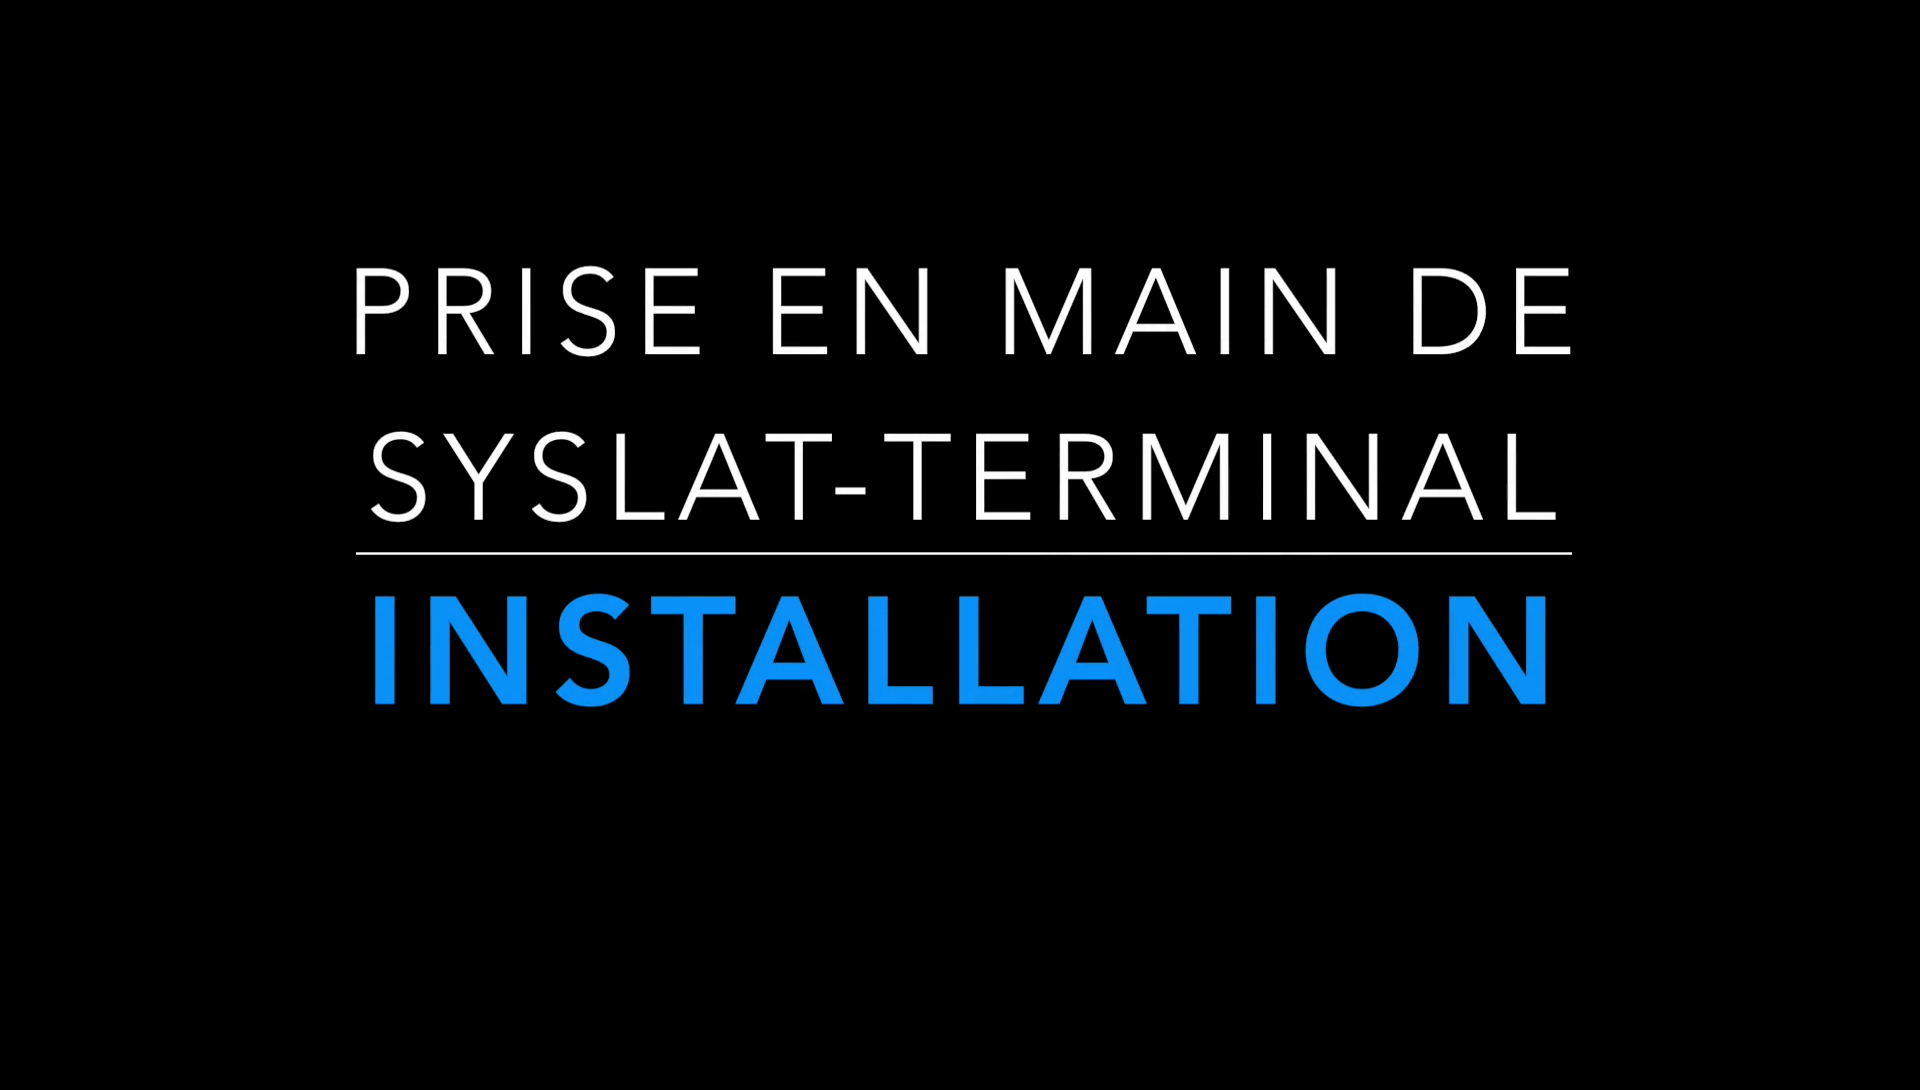 Prise en main de Syslat-Terminal 5 : Téléchargement et Installation